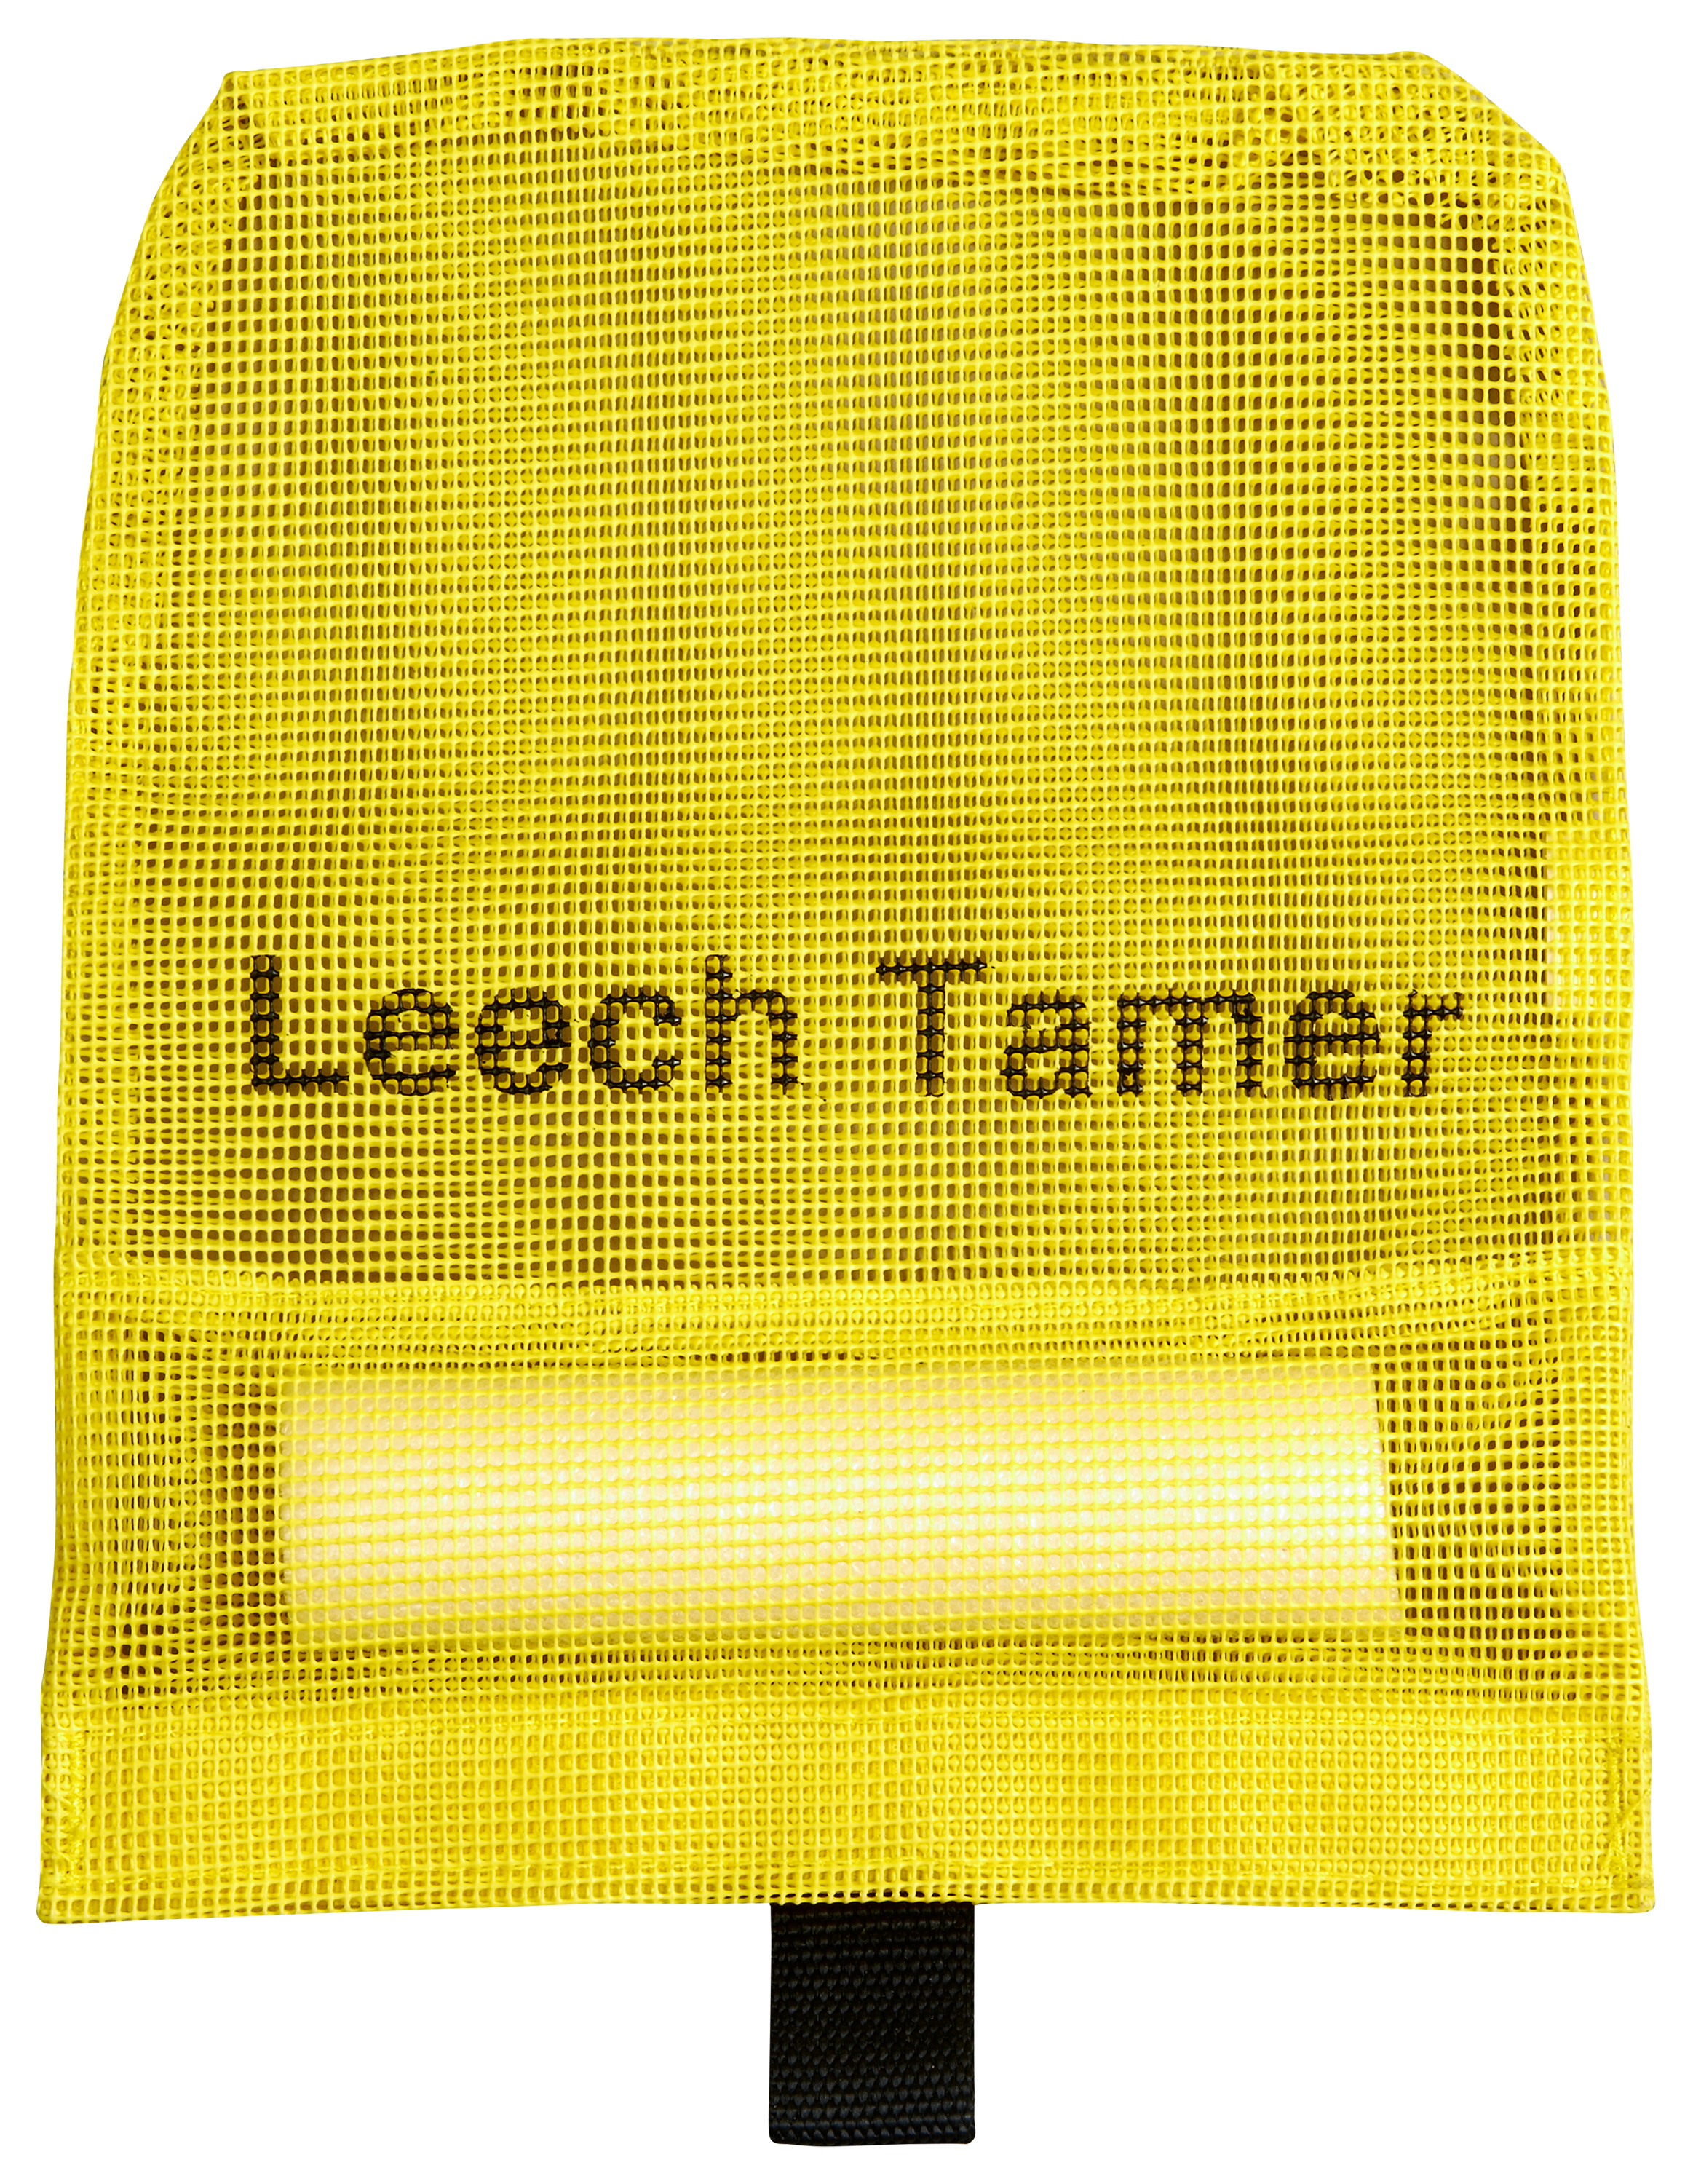 Lindy Leech Tamer